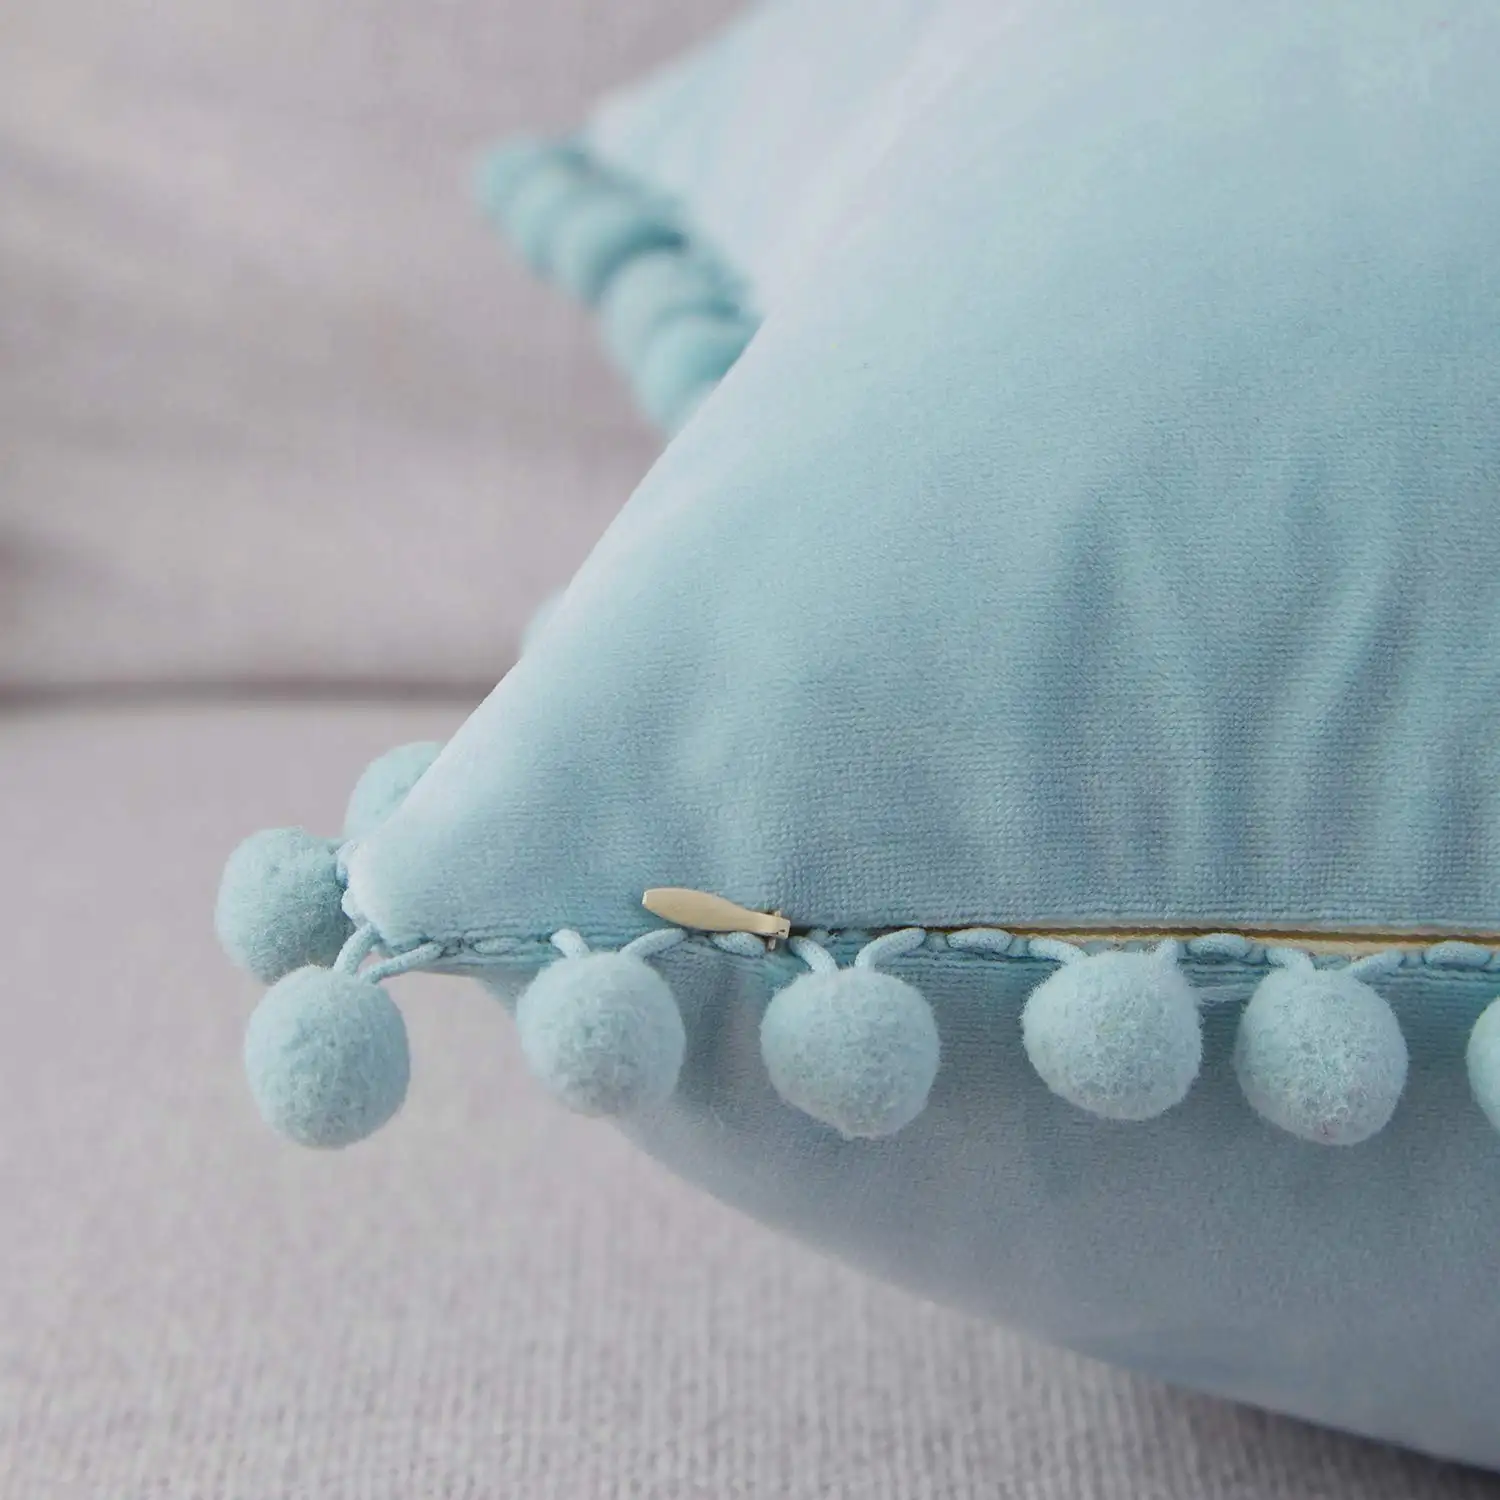 Nuova Serie di Vita Blu di Colore del Velluto Tessuto Decorativo Caso Cuscino di Tiro Cuscino Della Copertura